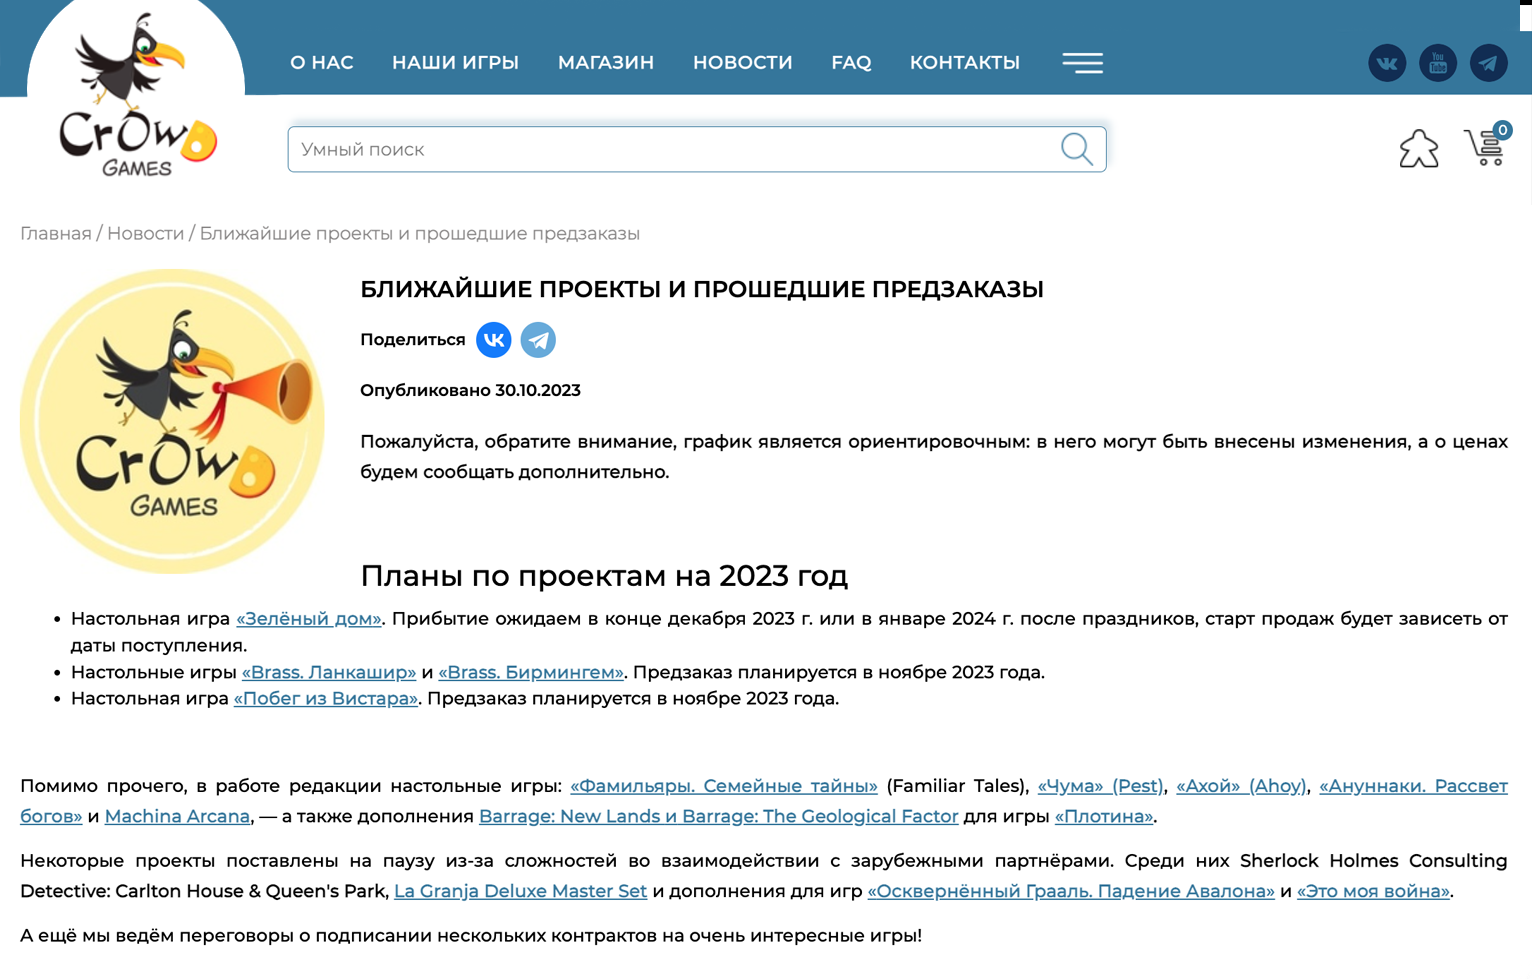 «Крауд-геймс» каждый год публикует новые планы и принимает предзаказы. Источник: crowdgames.ru